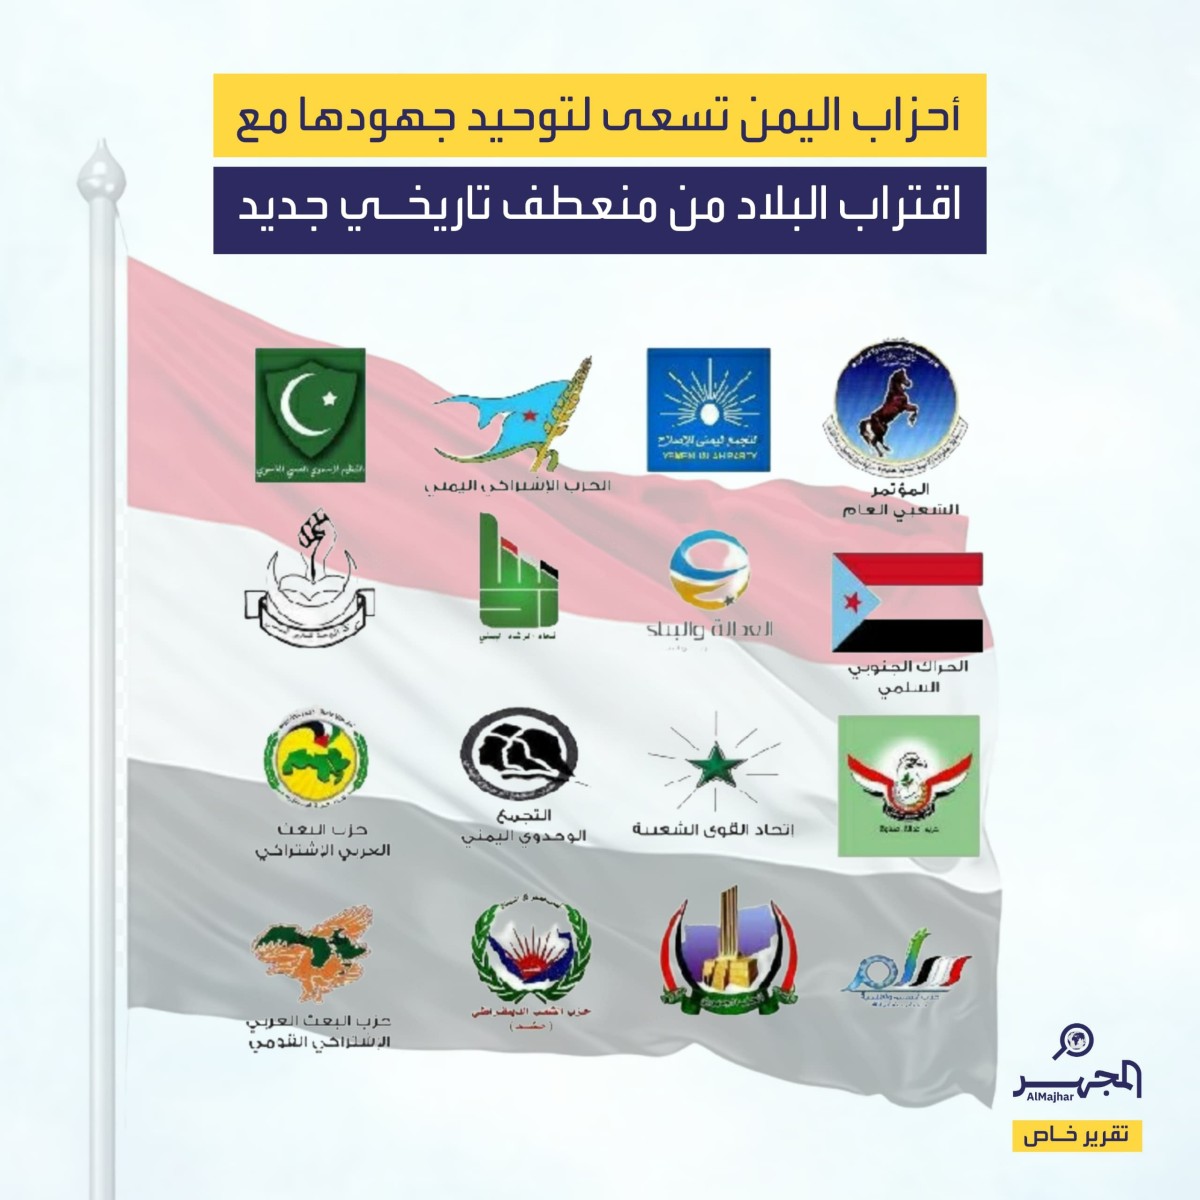 أحزاب اليمن تسعى لتوحيد جهودها مع اقتراب البلاد من منعطف تاريخي جديد (تقرير خاص)